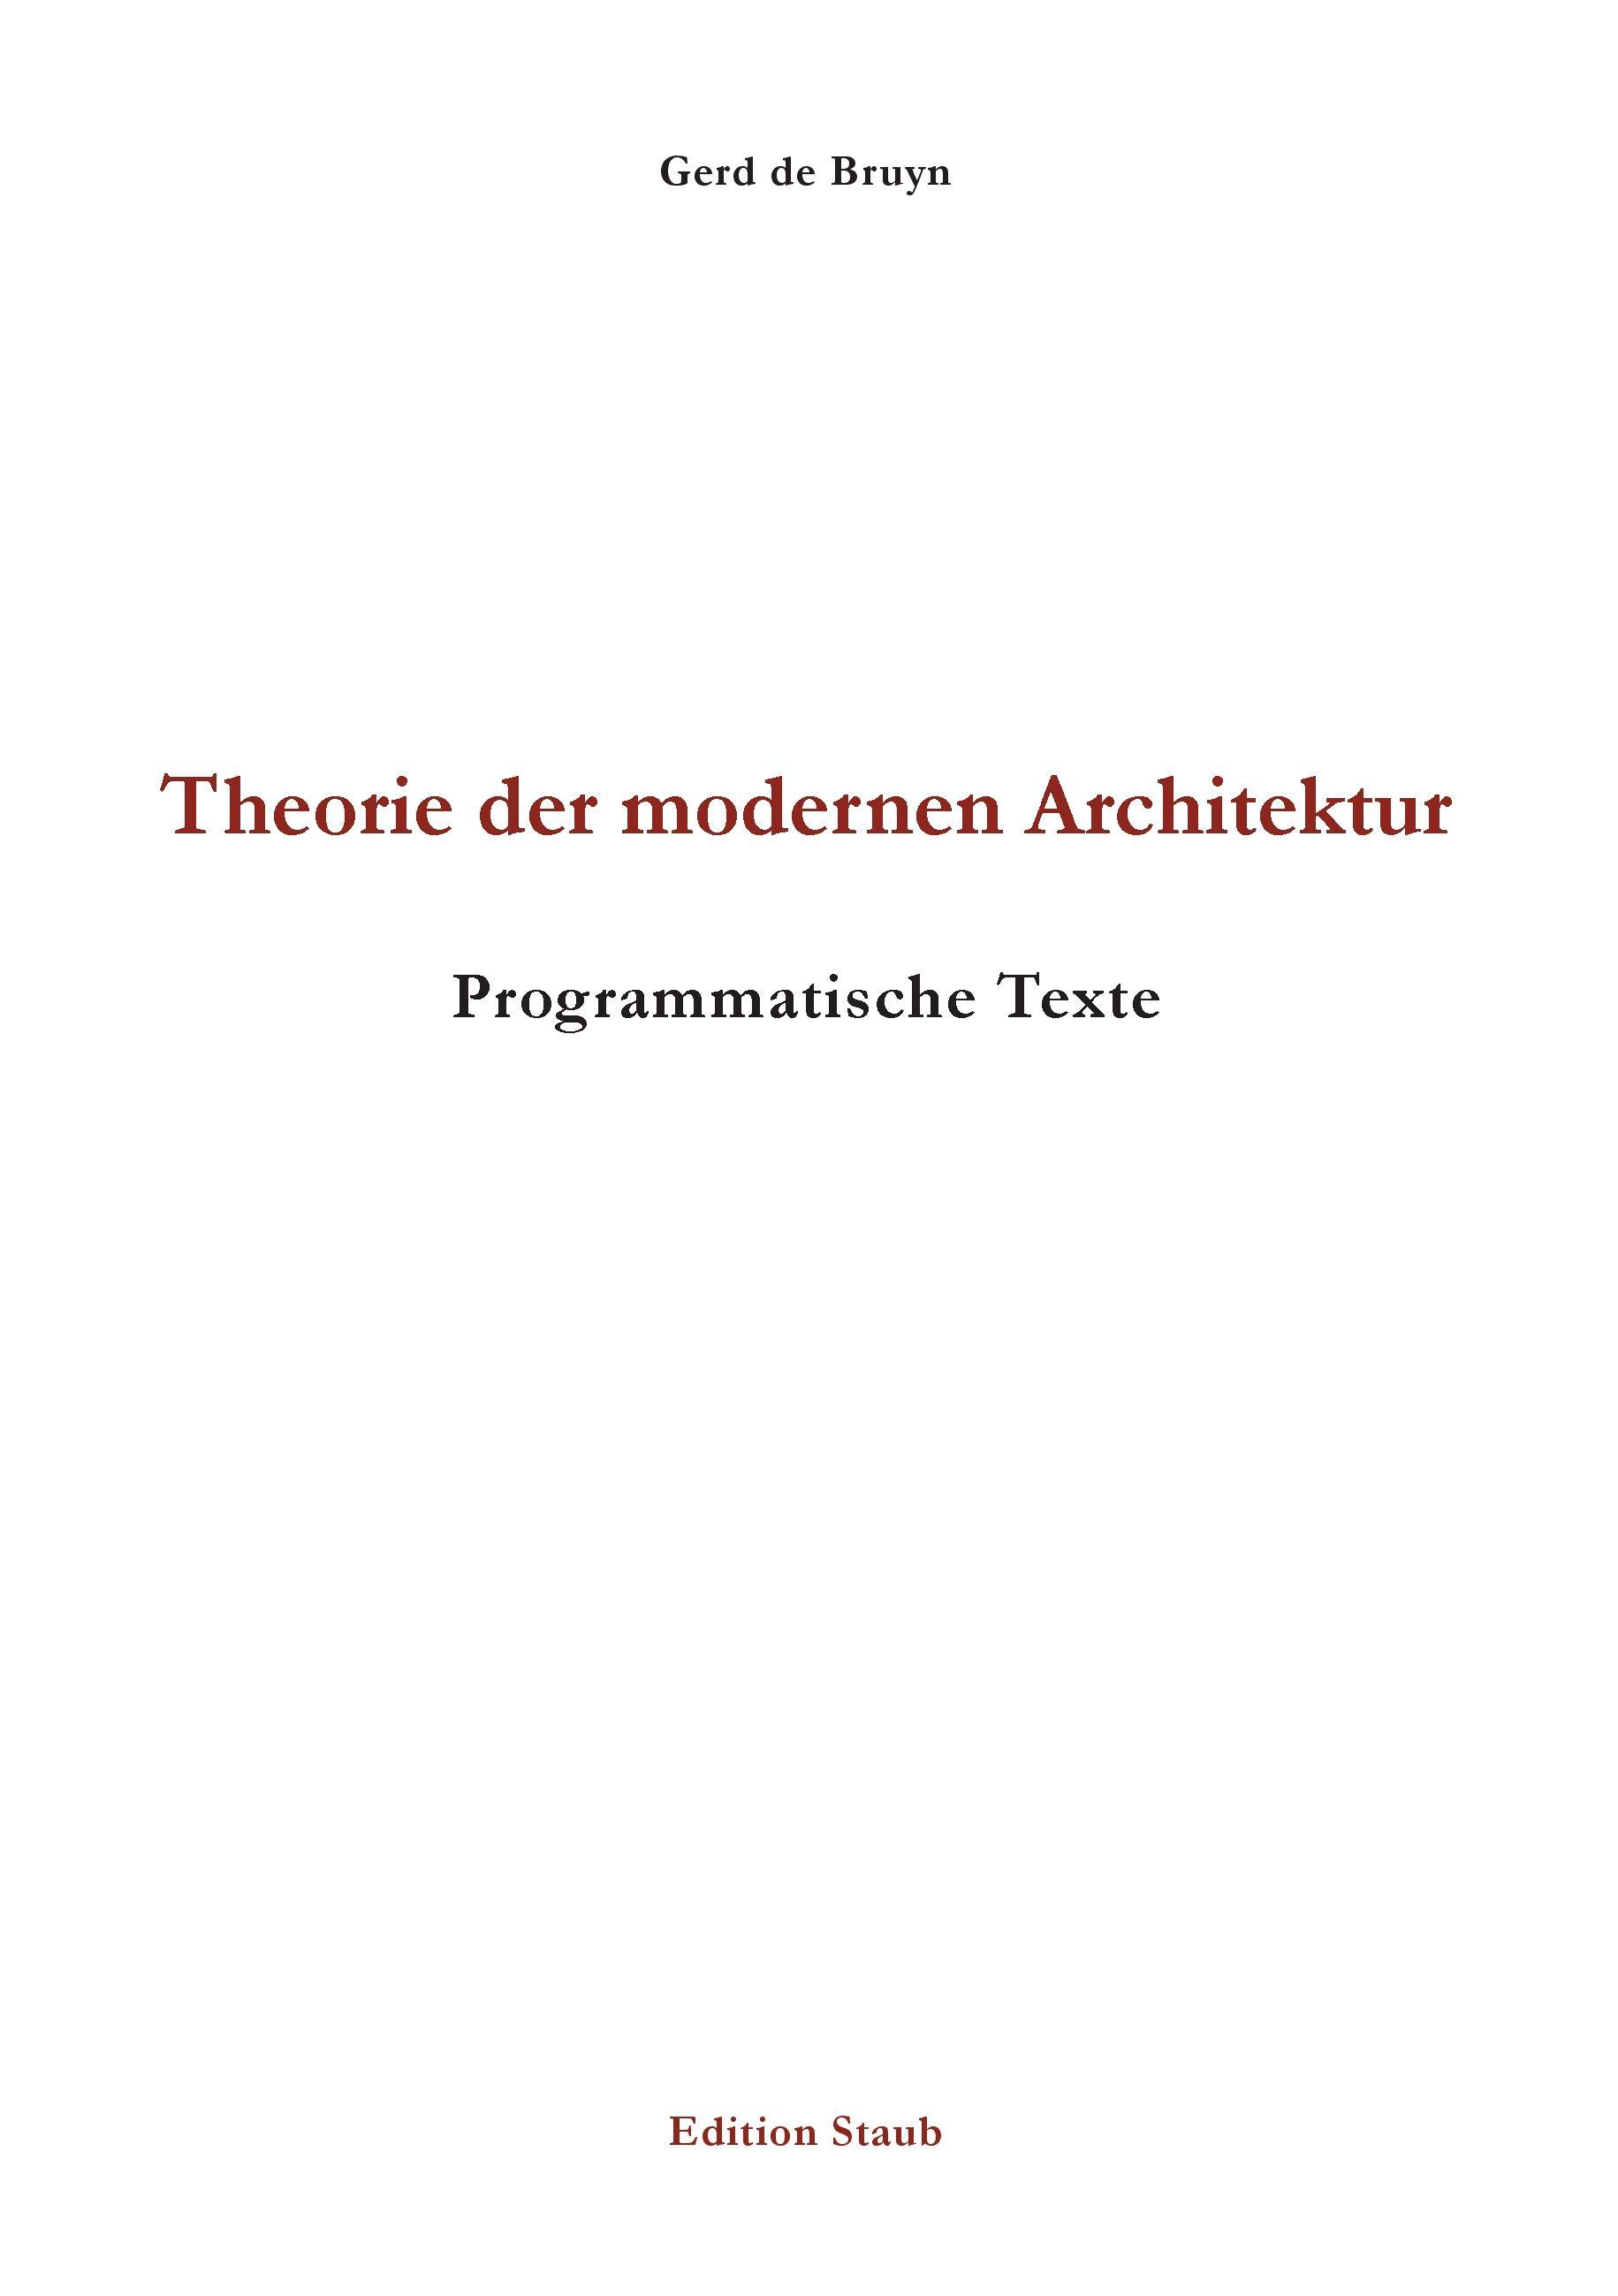 Theorie der modernen Architektur